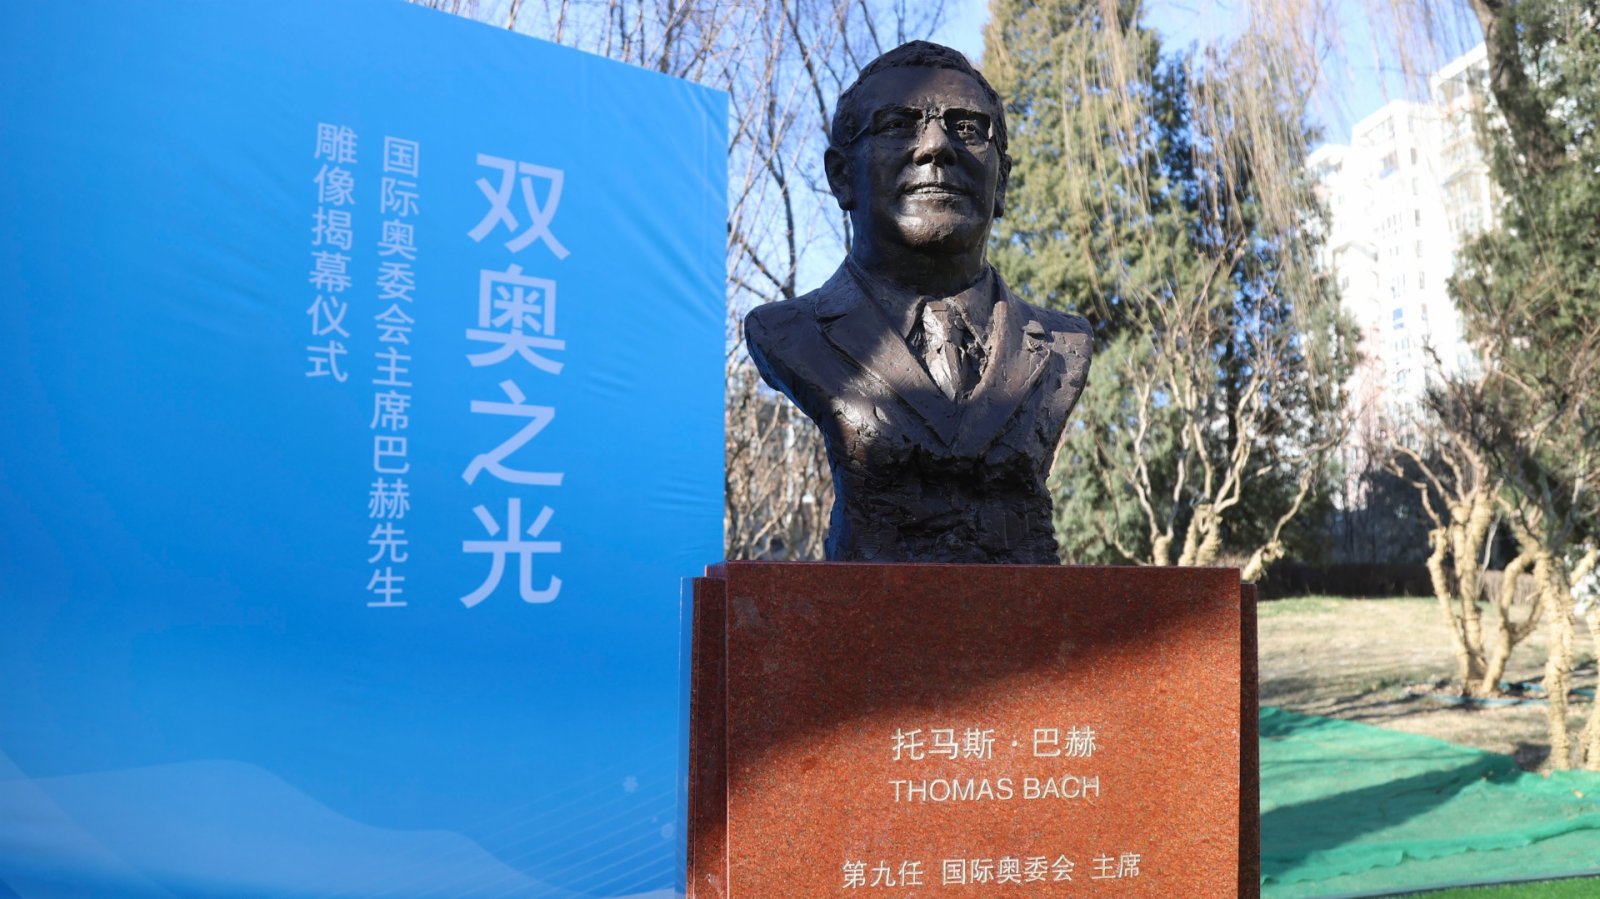 國際奧委會主席巴赫雕像北京亮相